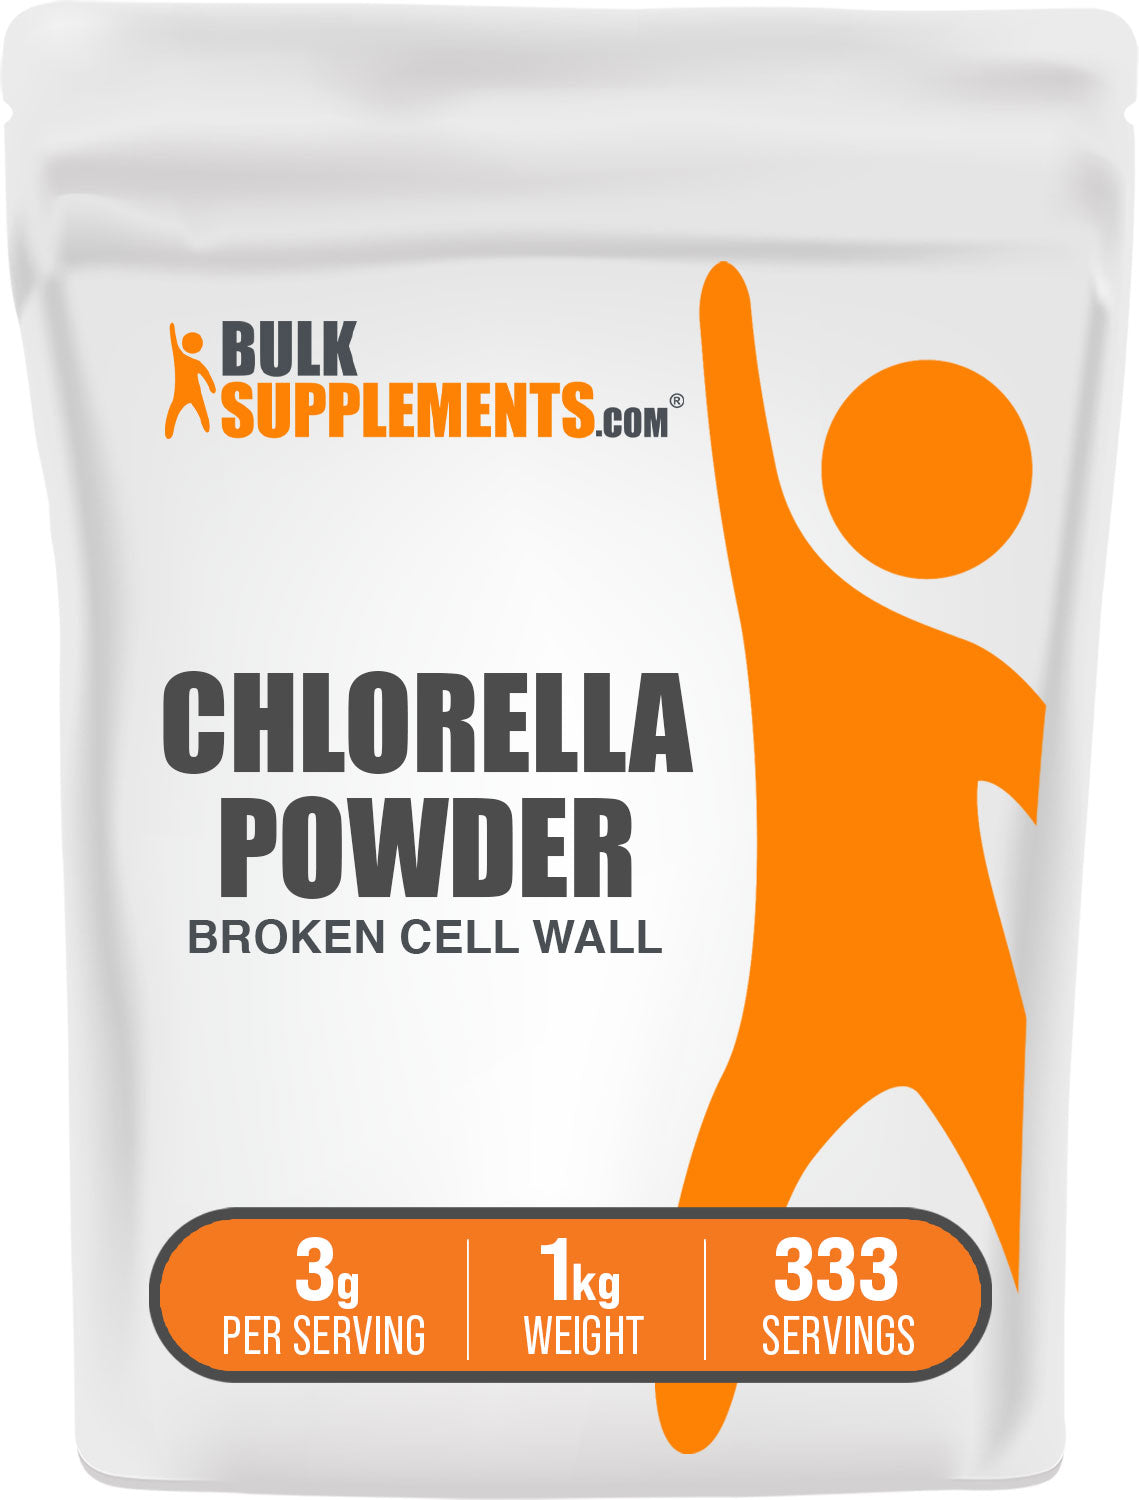 Chlorella Powder 1kg bag